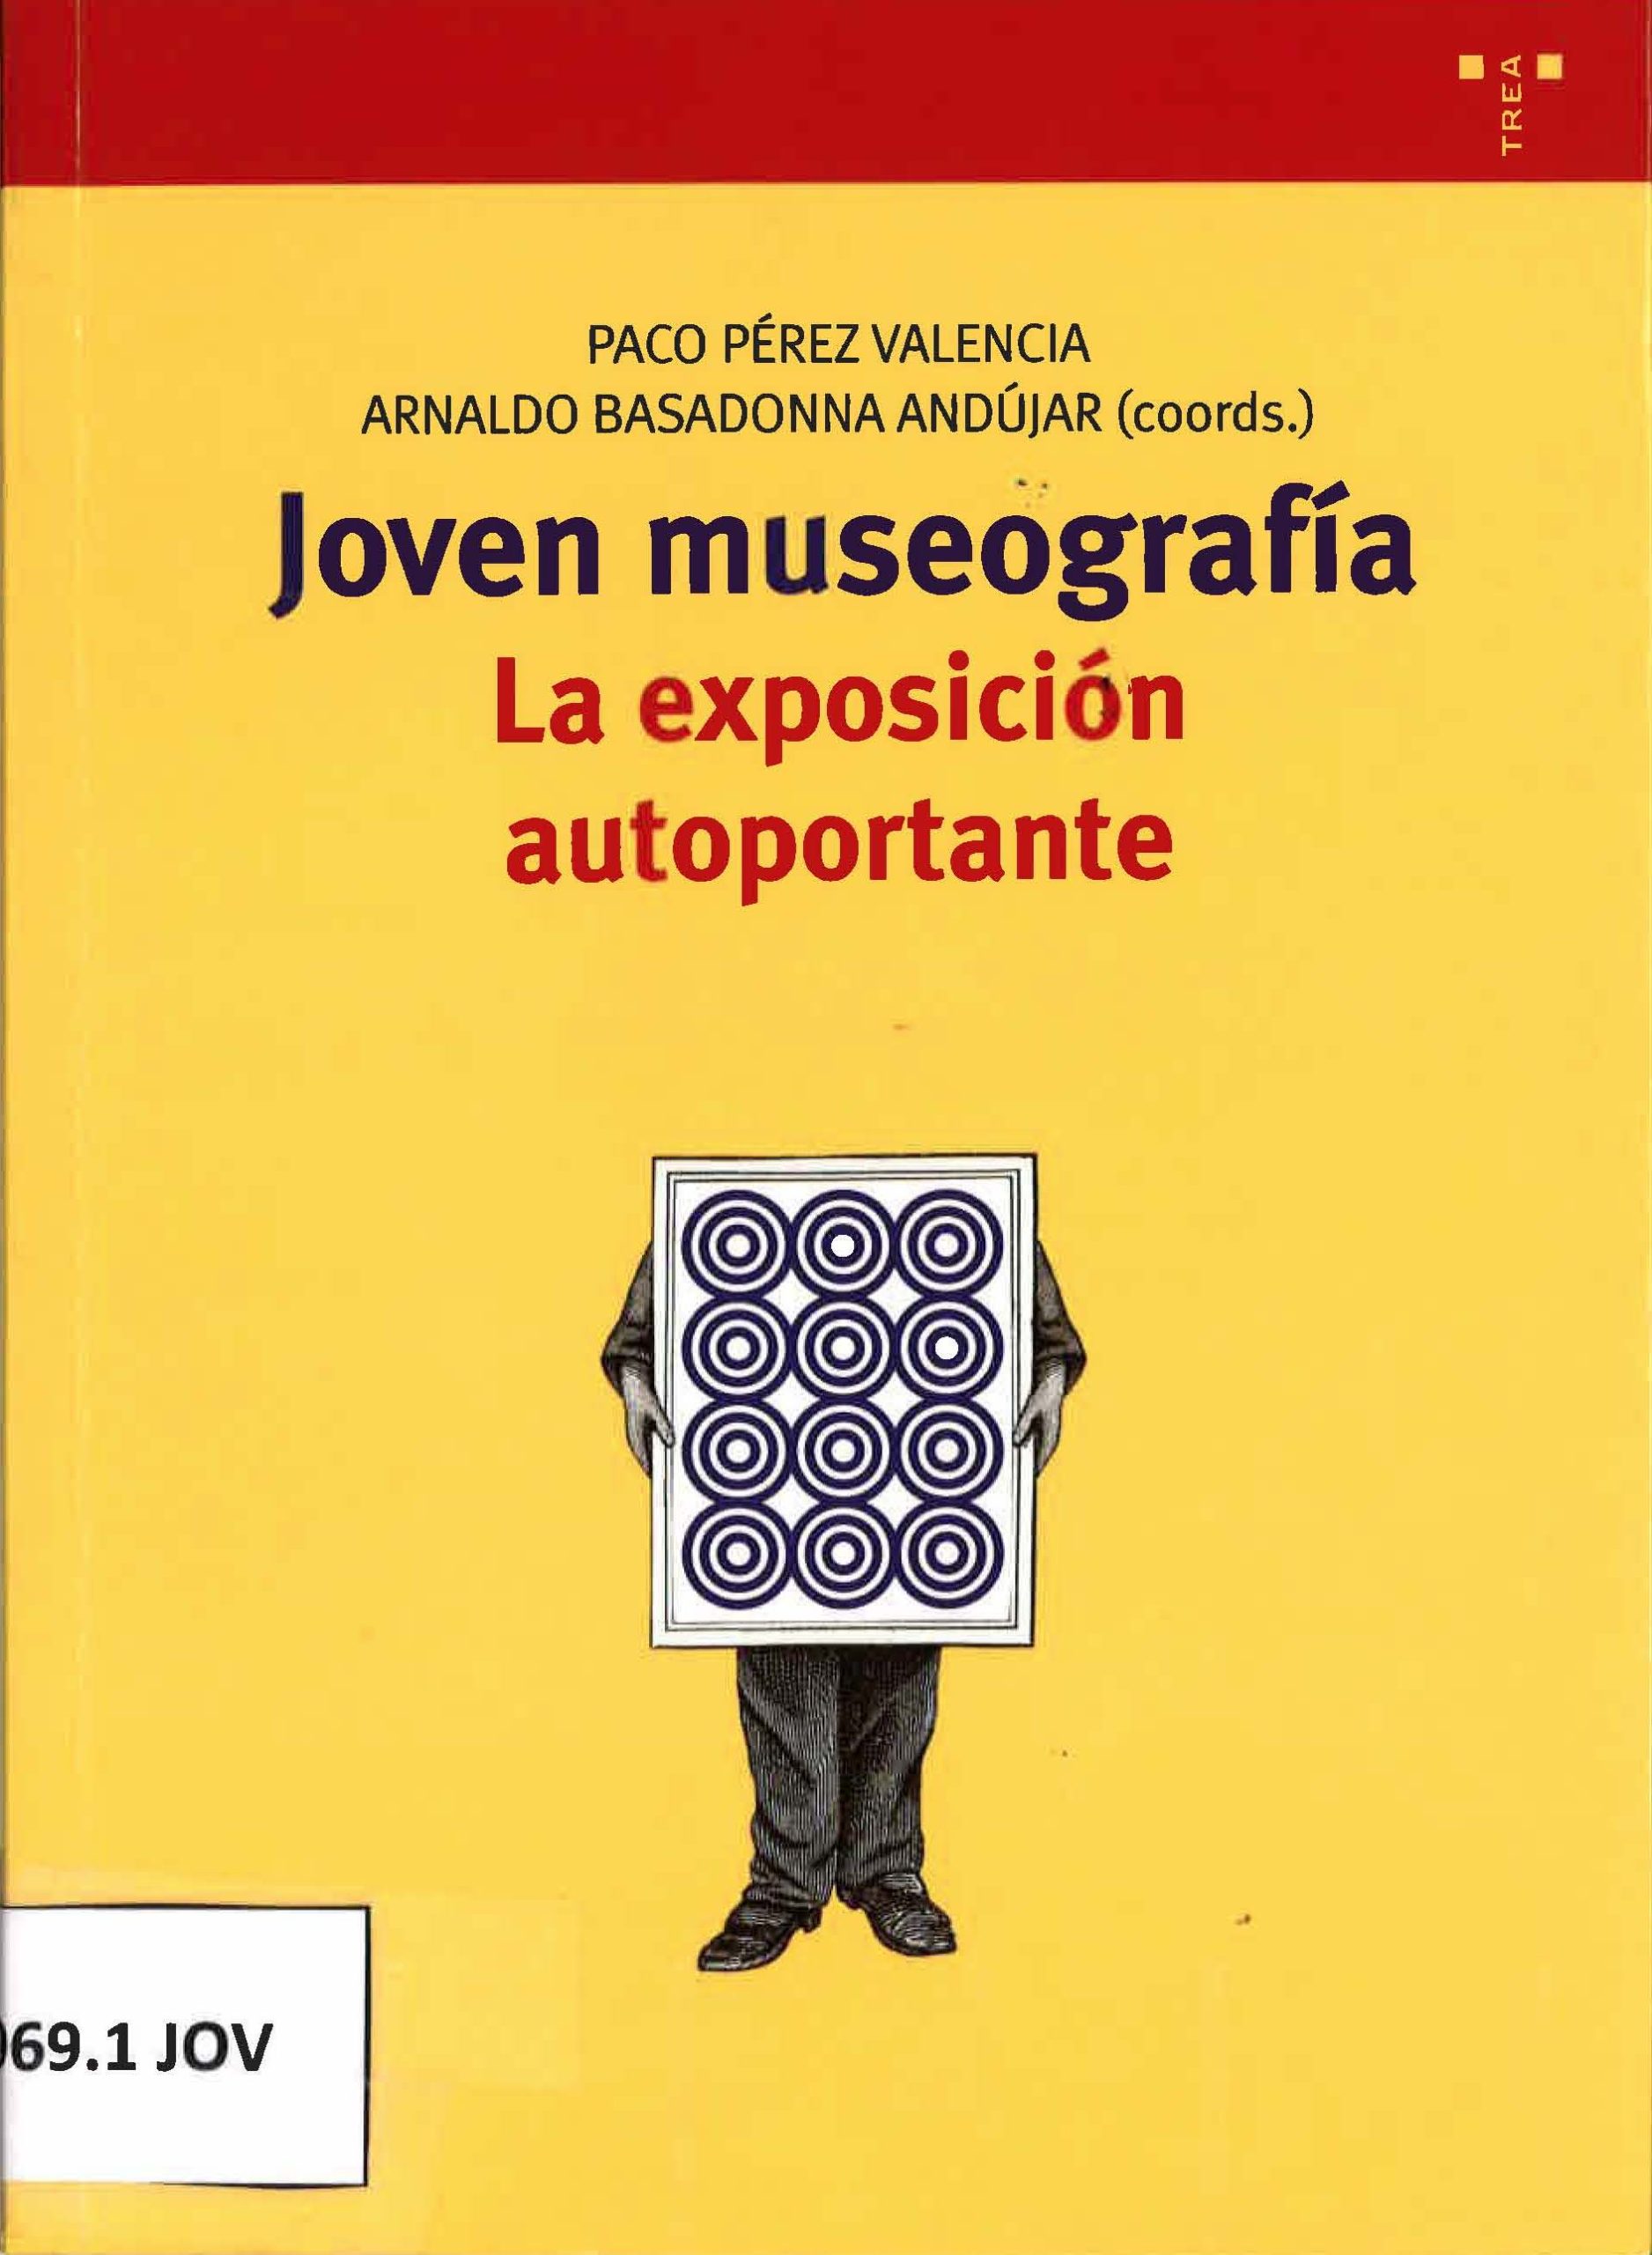 Joven museografía. La exposición autoportante. Paco Pérez Valencia y Arnaldo Basadonna Andújar-image